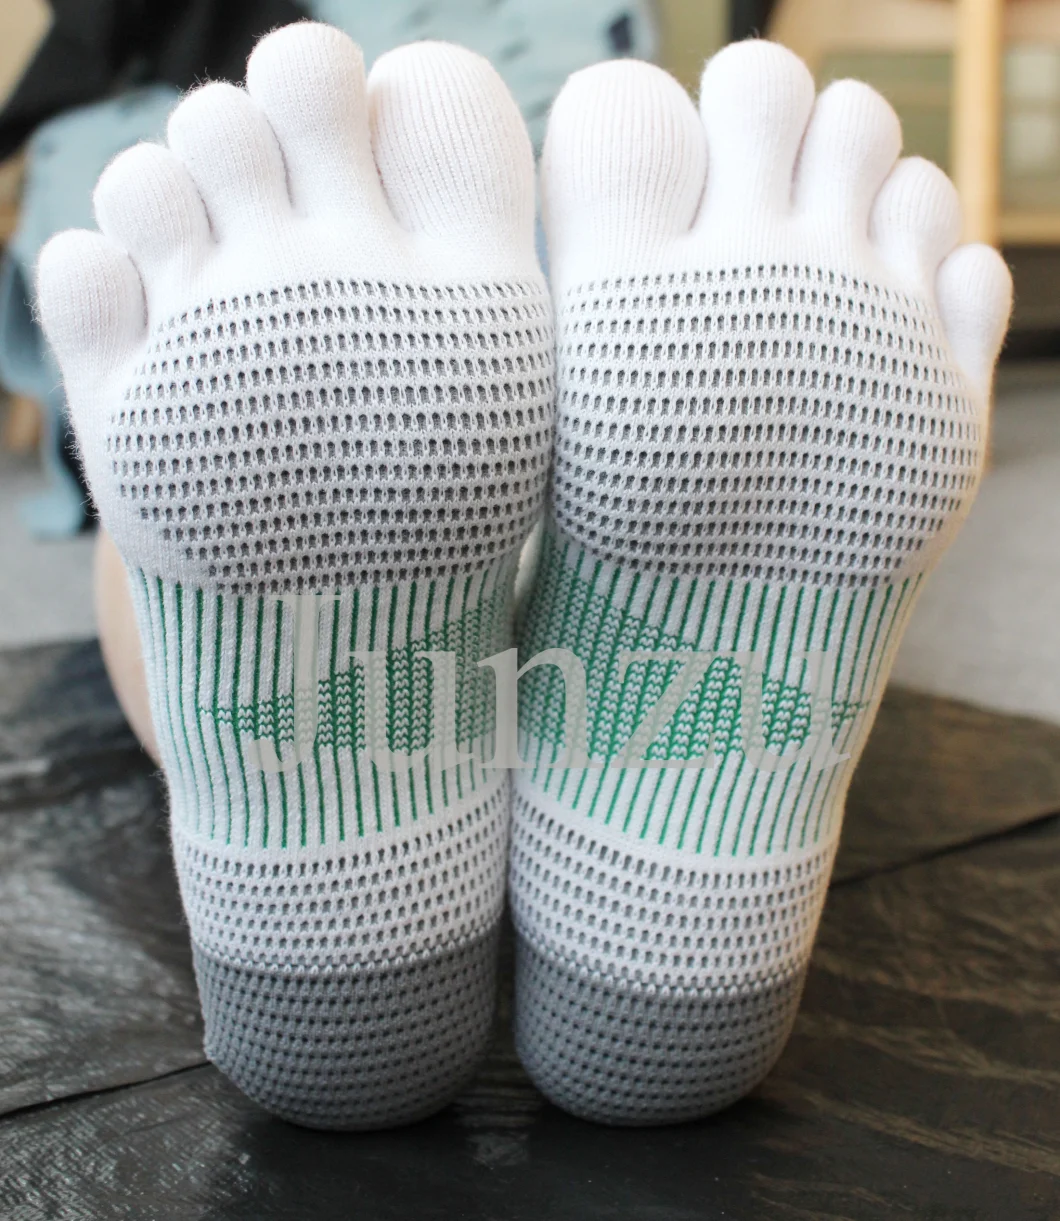 No Slippers Five Fingers Toe Socks Best Quality Yoga Socks